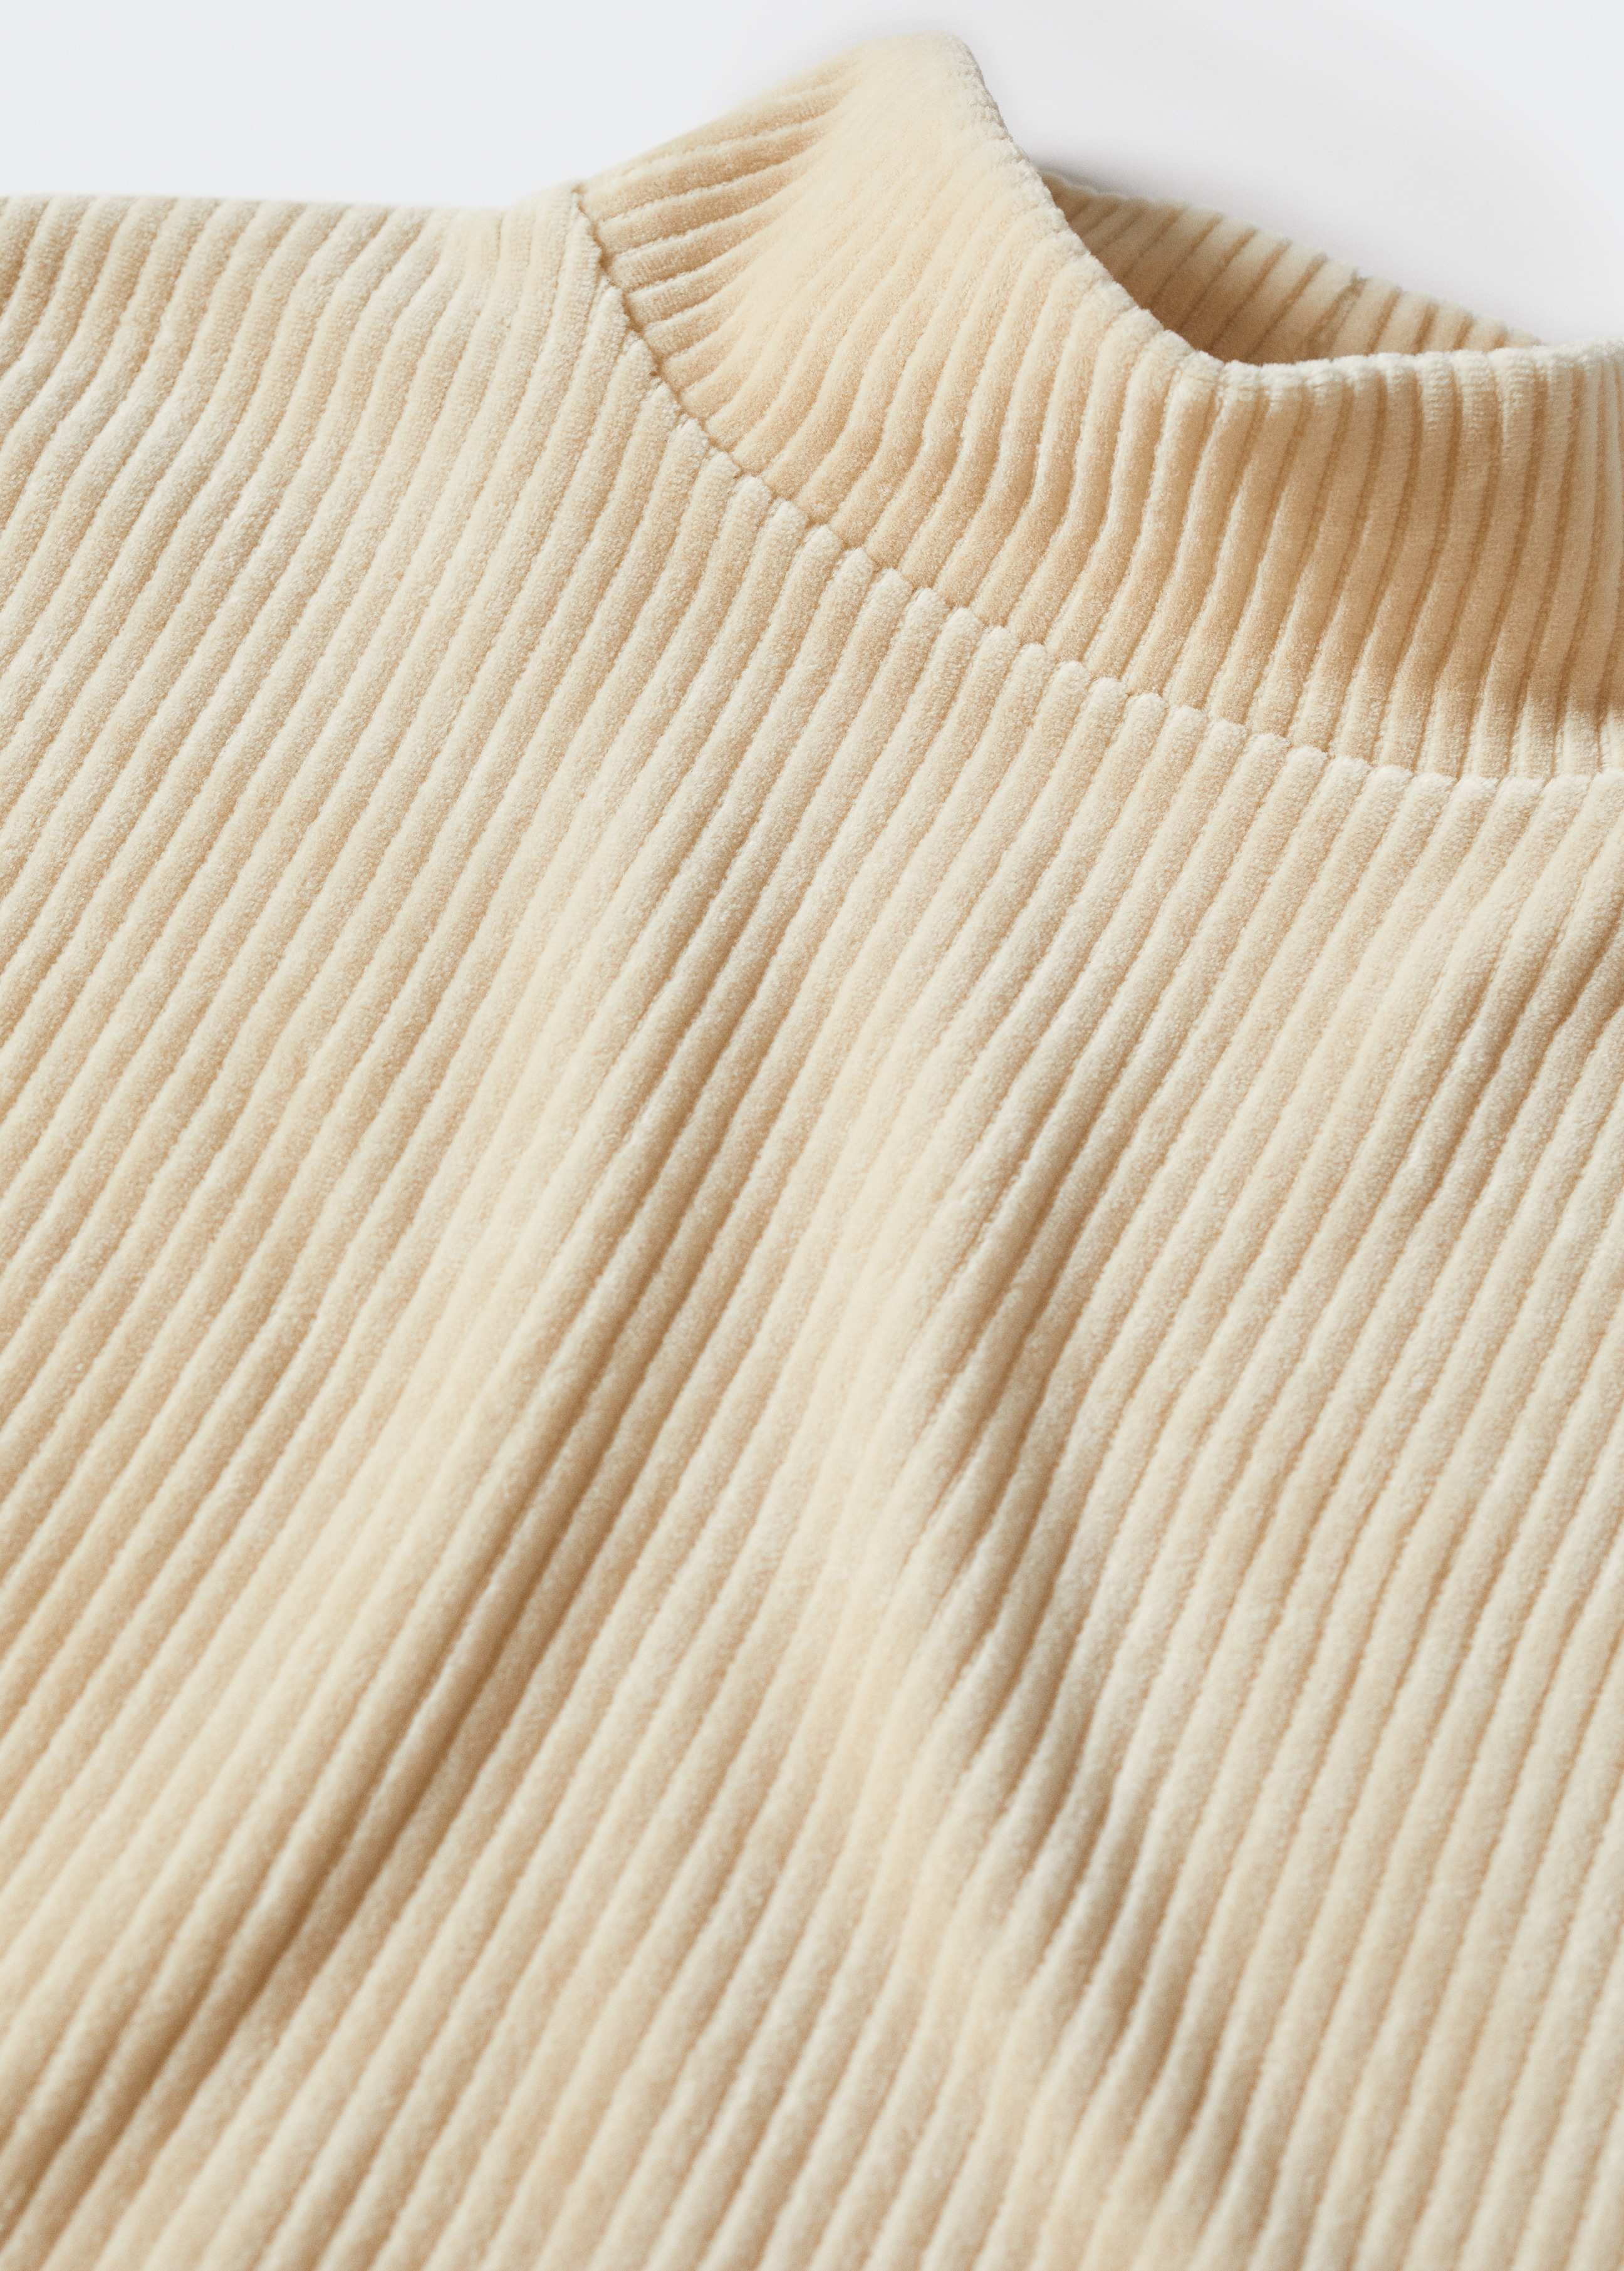 Sweatshirt de bombazina de gola perkins - Pormenor do artigo 8